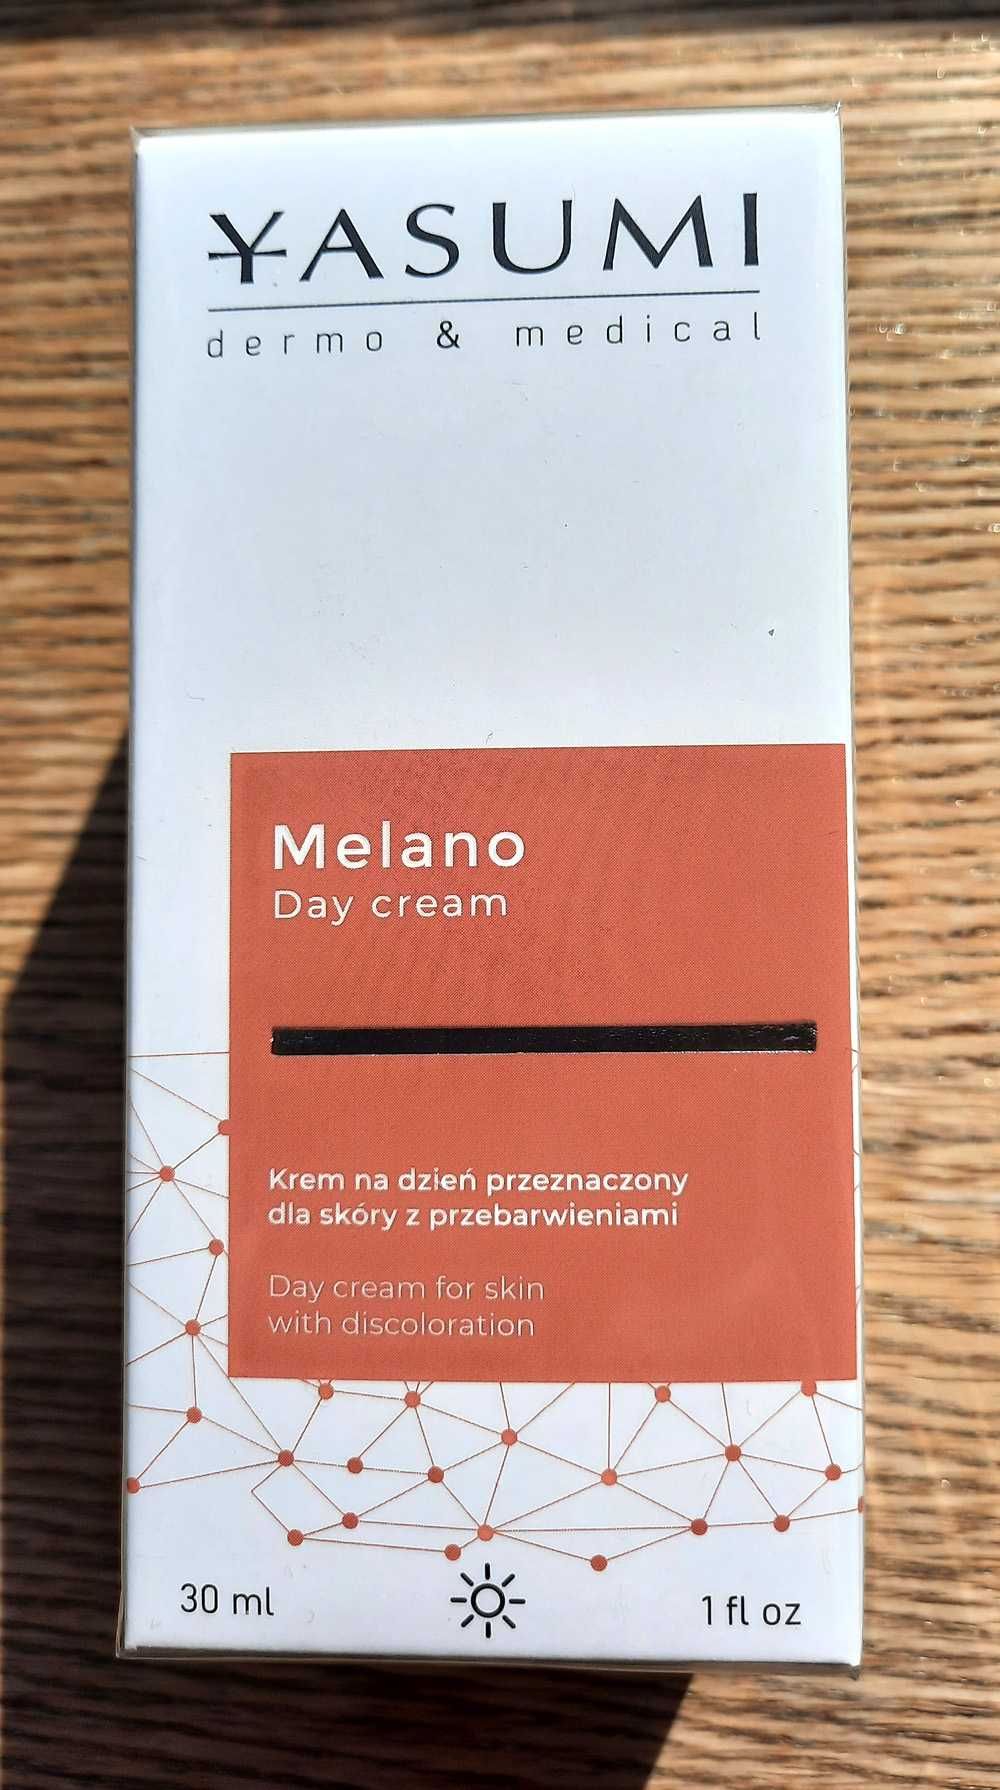 Melano Day Cream, Yasumi, nowe